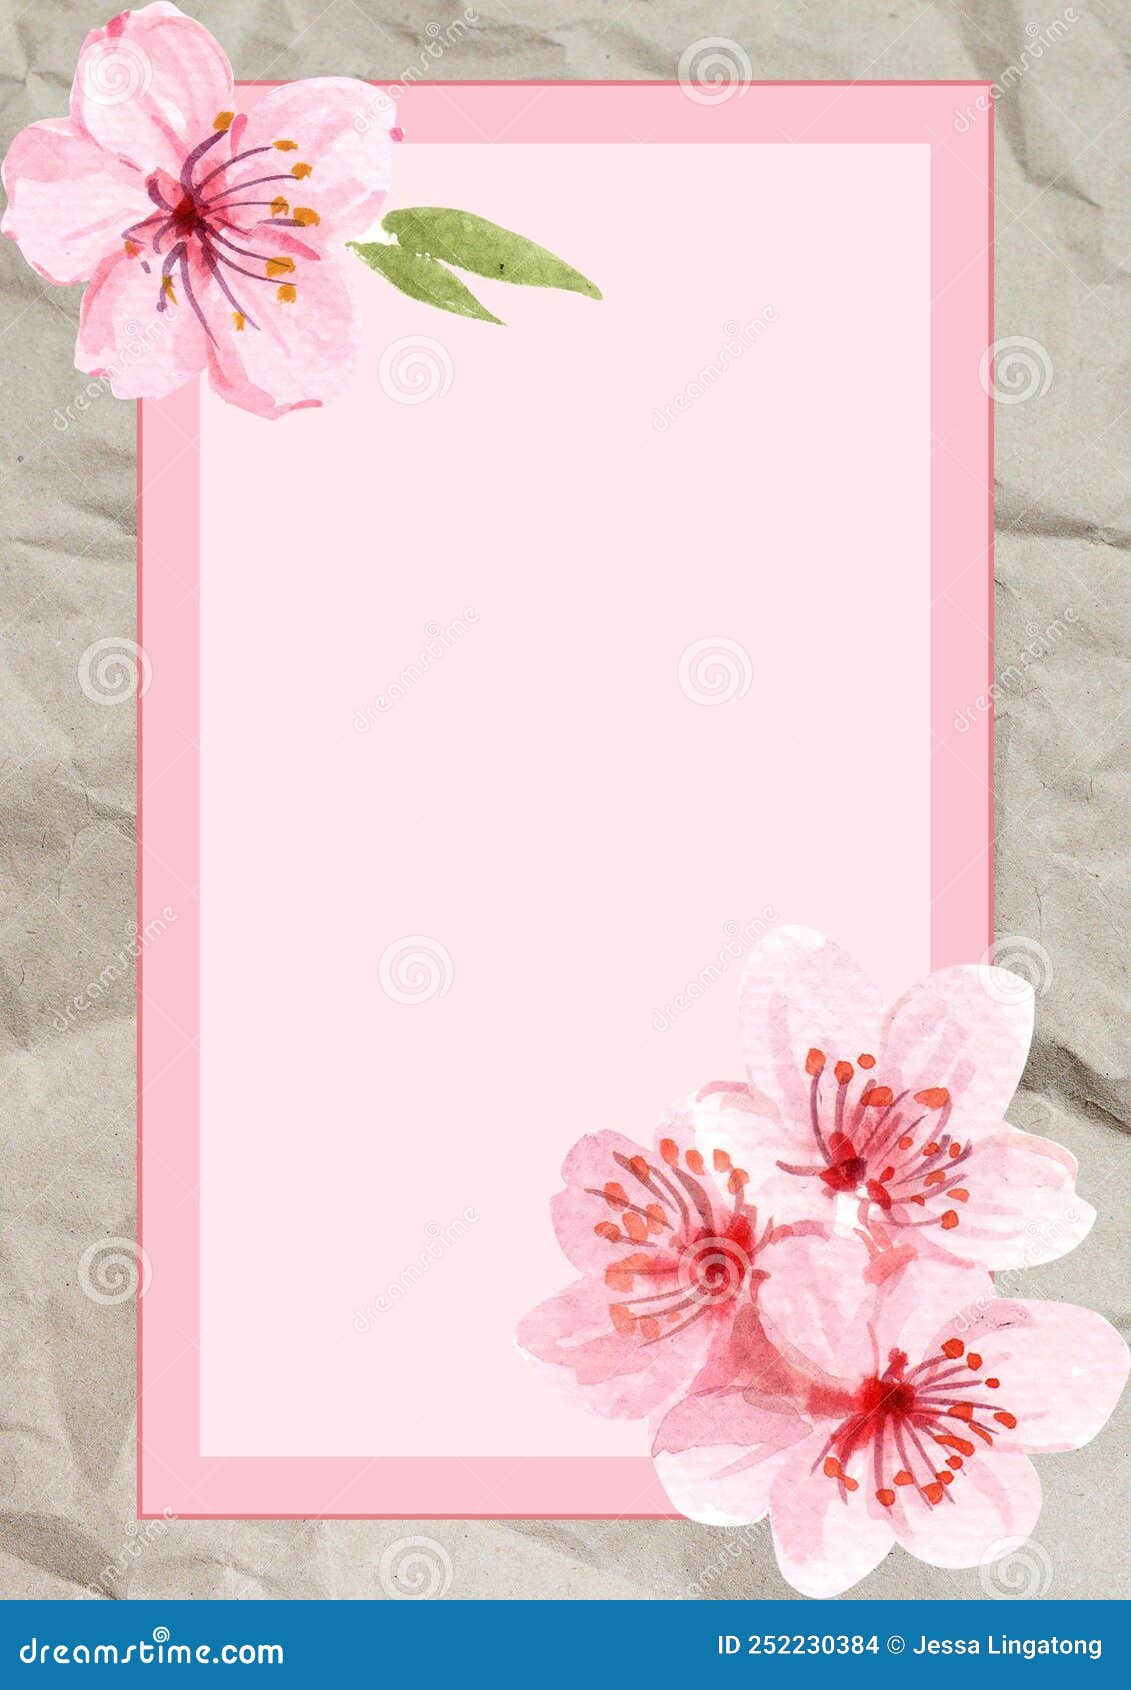 Sakura, Cherry Blossoms, Spring Themed Cellphone Wallpaper Lockscreen  Wallaper Stock Photo - Image of world, flower: 252230384